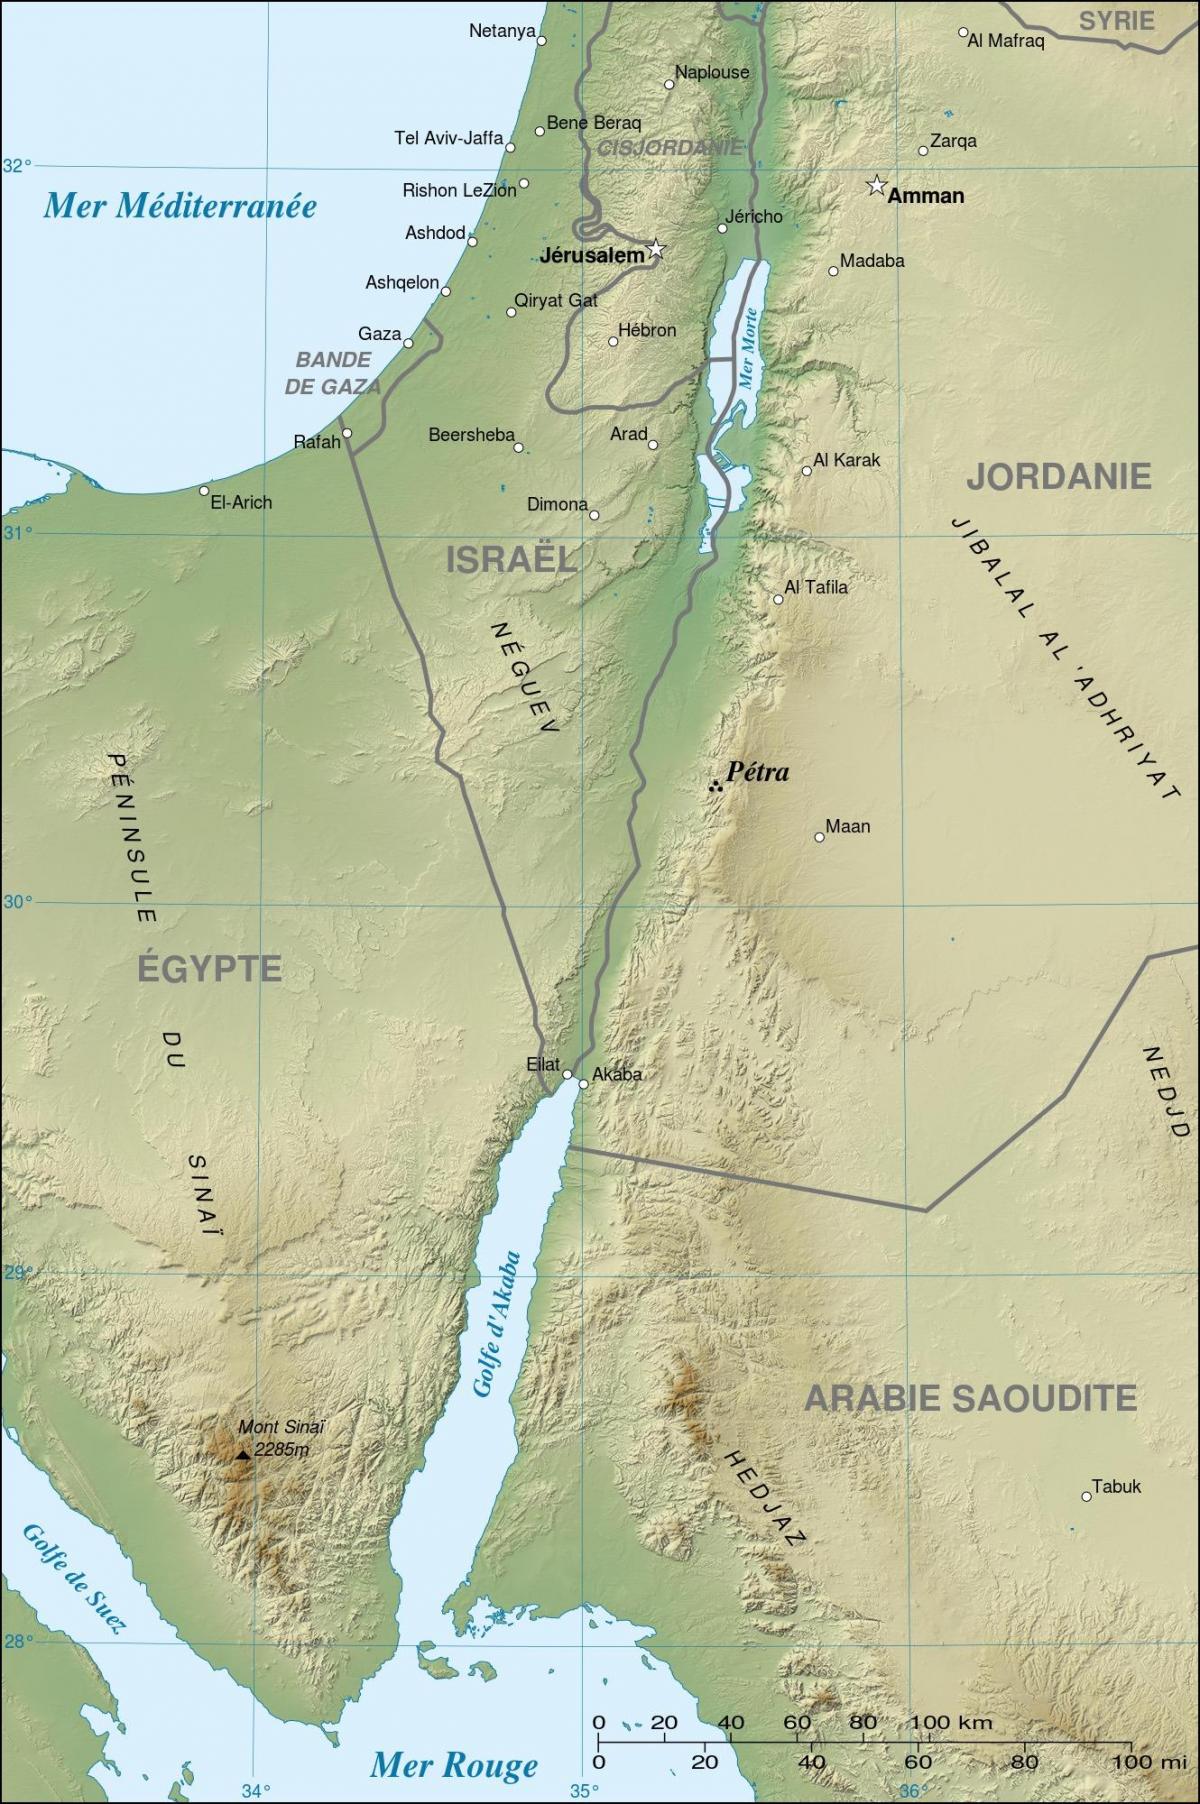 zemljevid Jordan, ki prikazuje petra